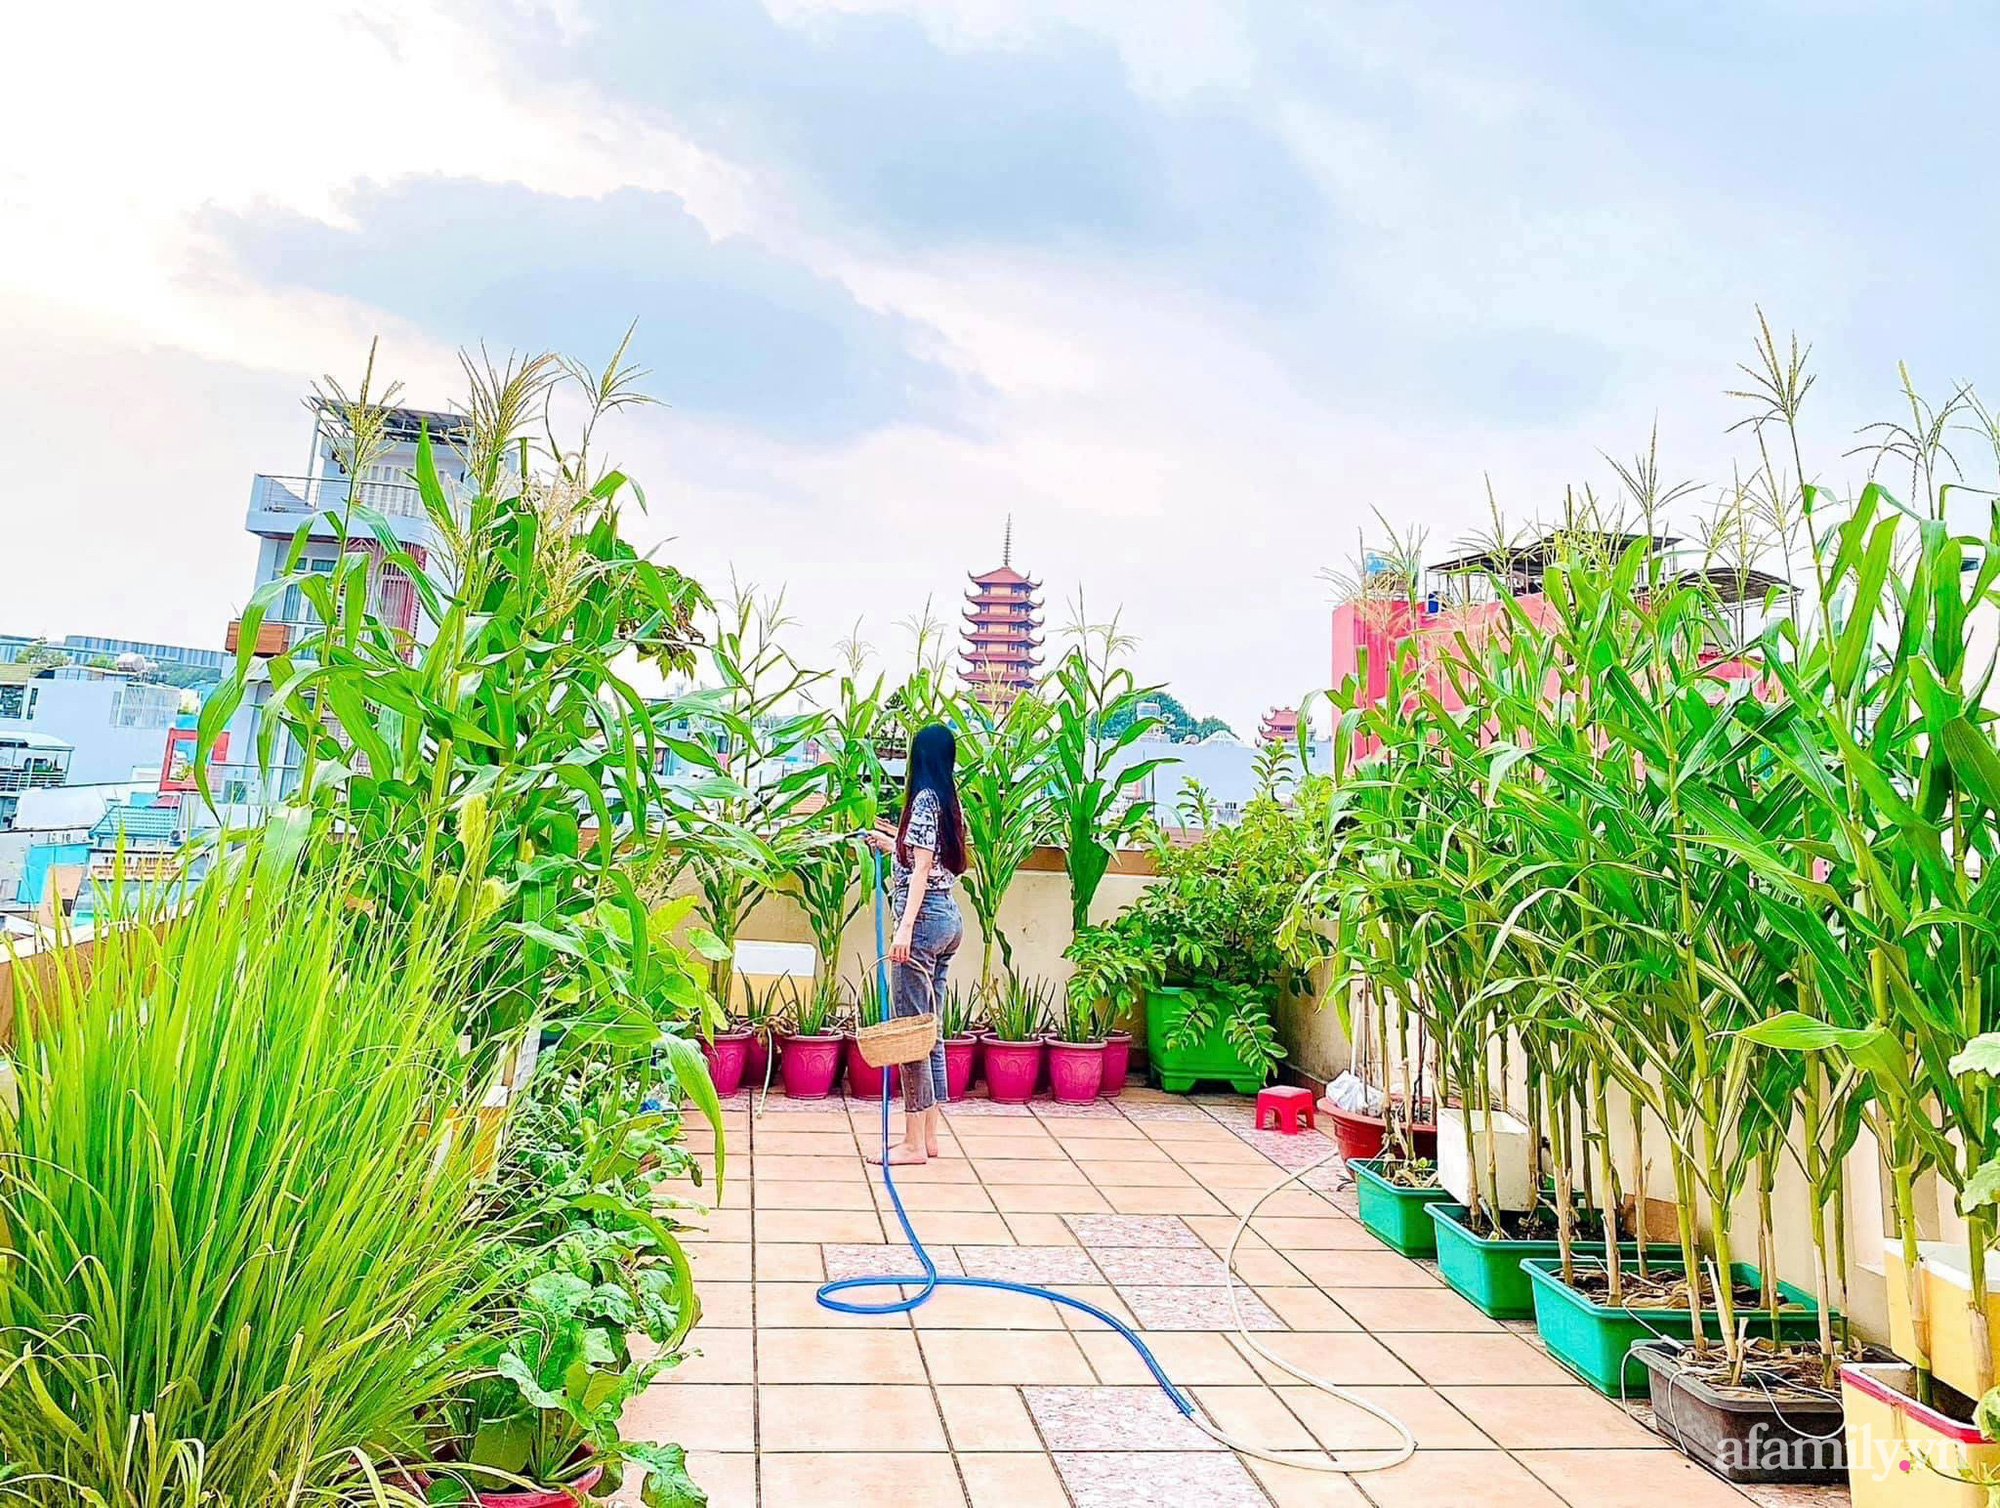 Sài Gòn nơi khát vọng xanh mát và sạch đến với vườn rau trên sân thượng. Tại đây, bạn có thể sống trong không gian xanh tươi, cung cấp cho gia đình và bản thân những loại rau sạch và đẹp mỗi ngày.